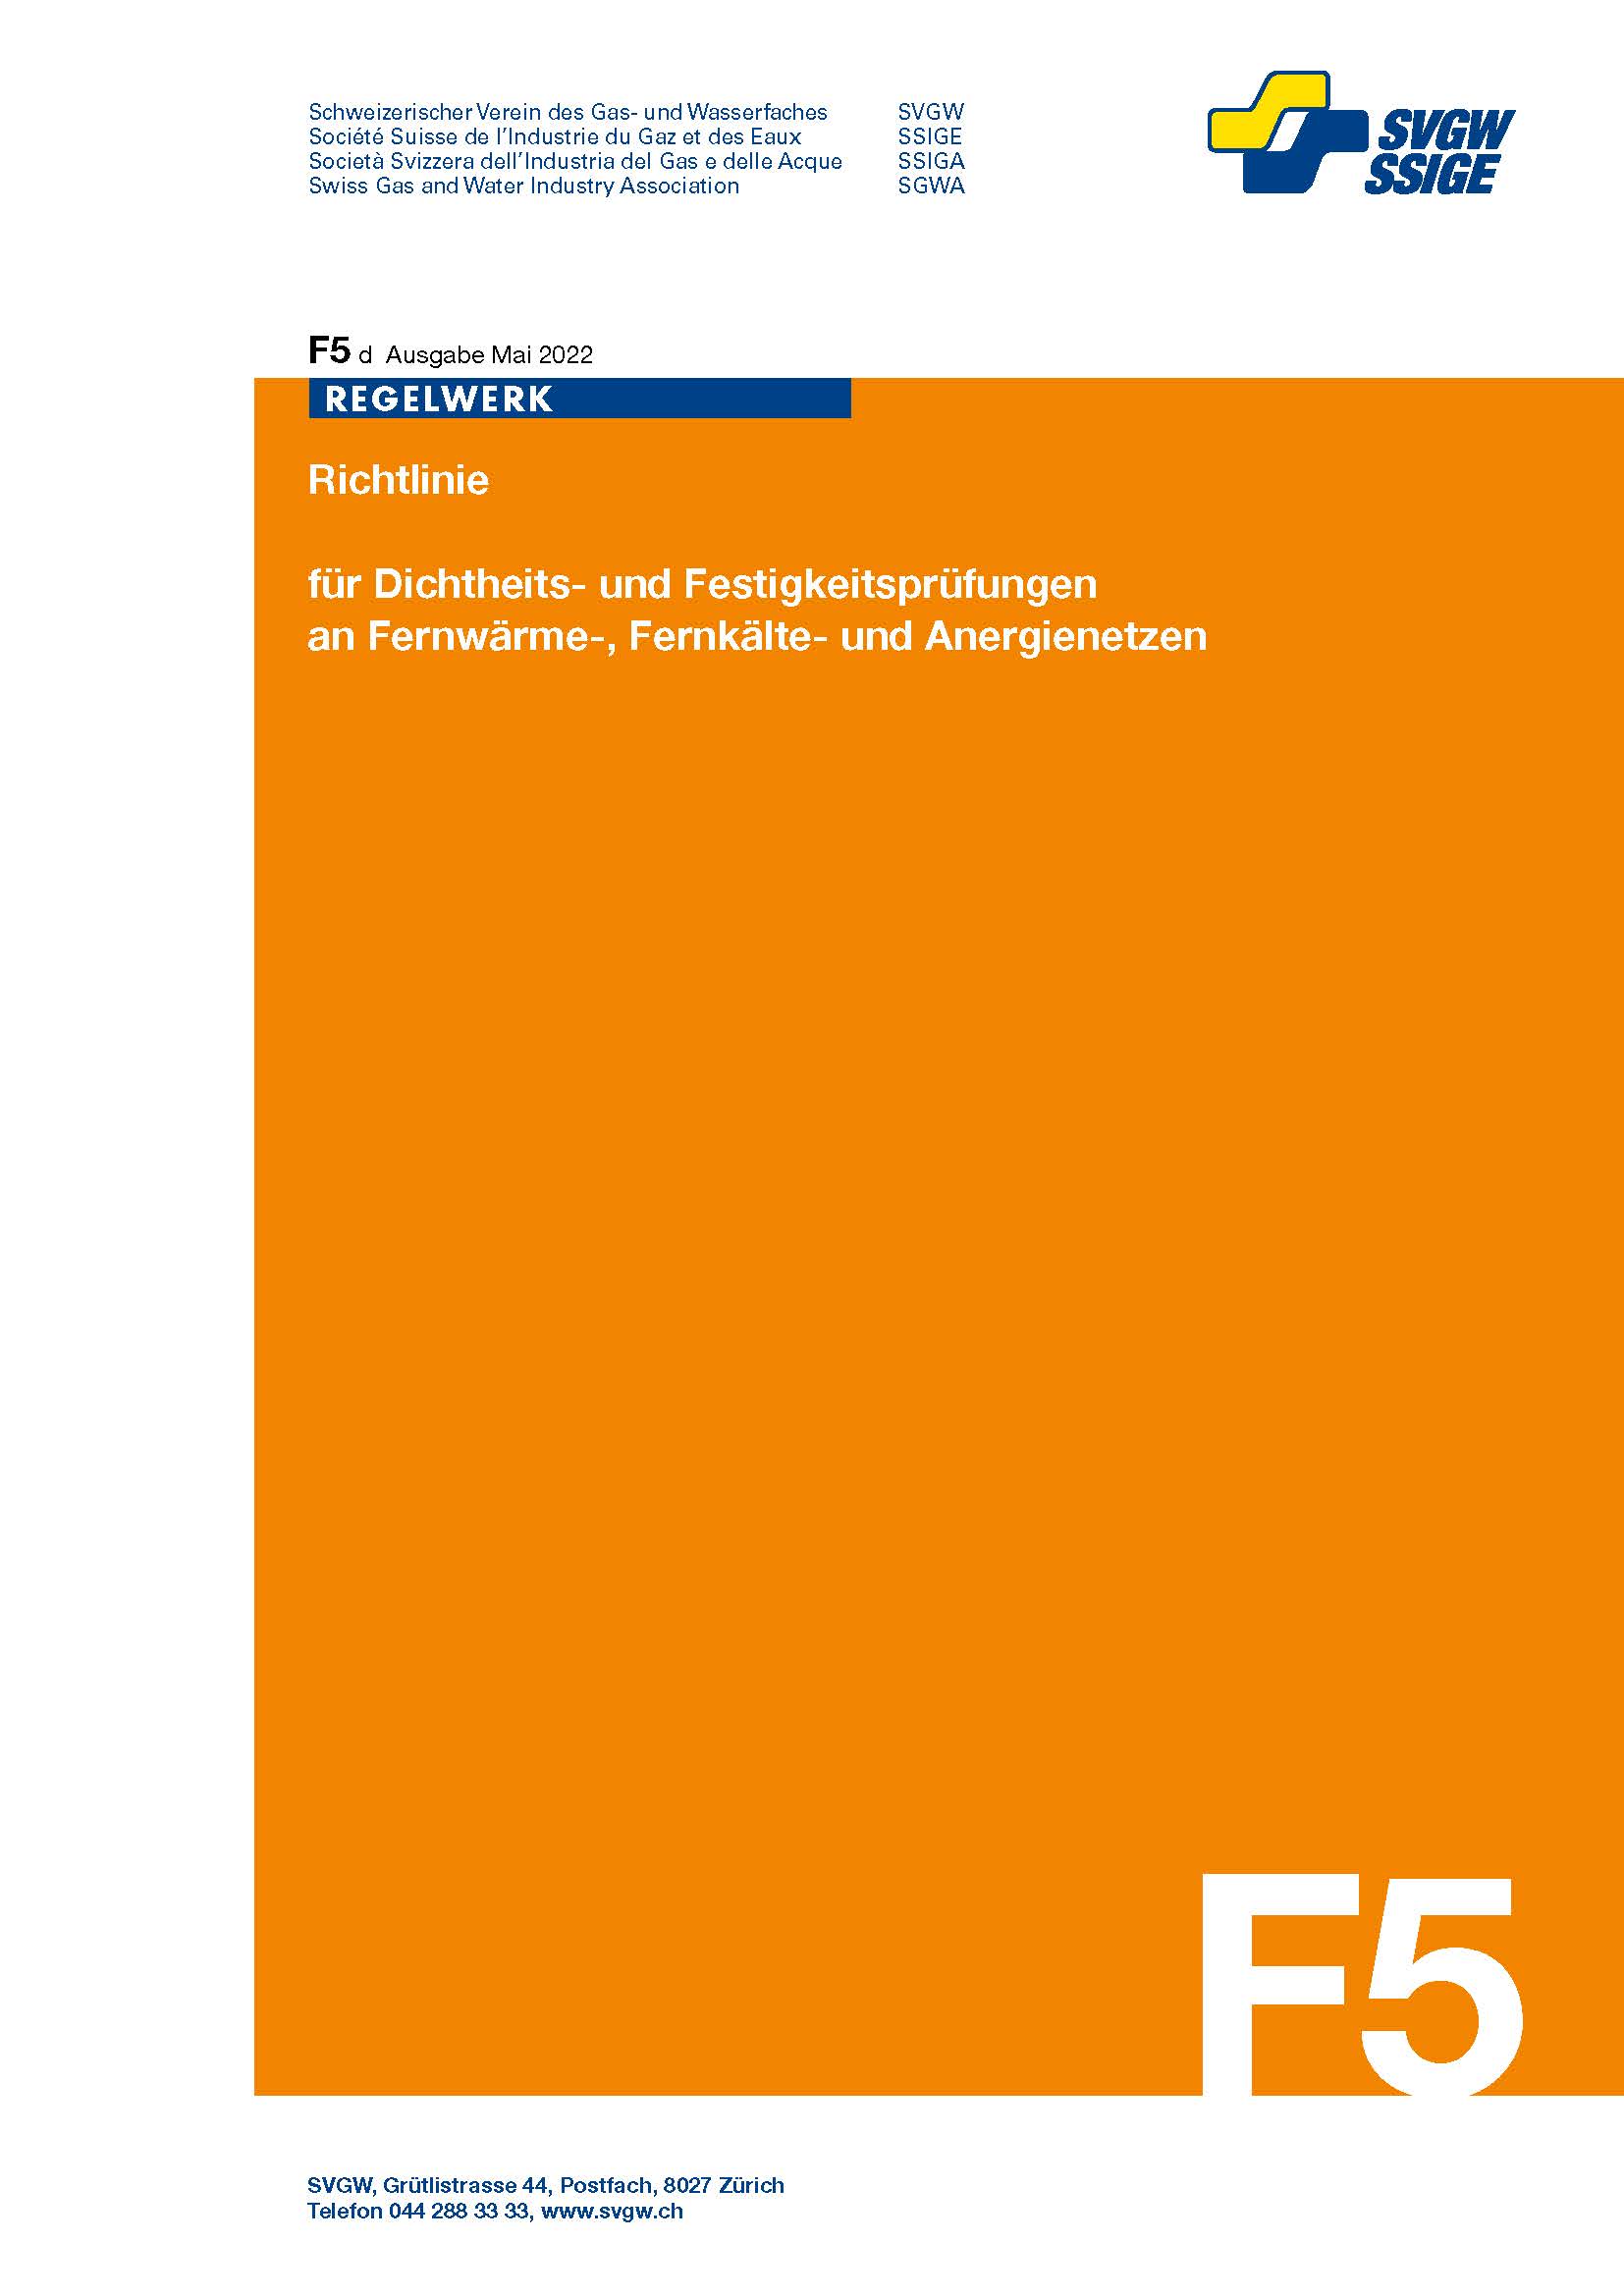 F5 d Richtlinie für Dichtheits- und Festigkeitsprüfungen an Fernwärme-, Fernkälte- und Anergiennetzen (2)